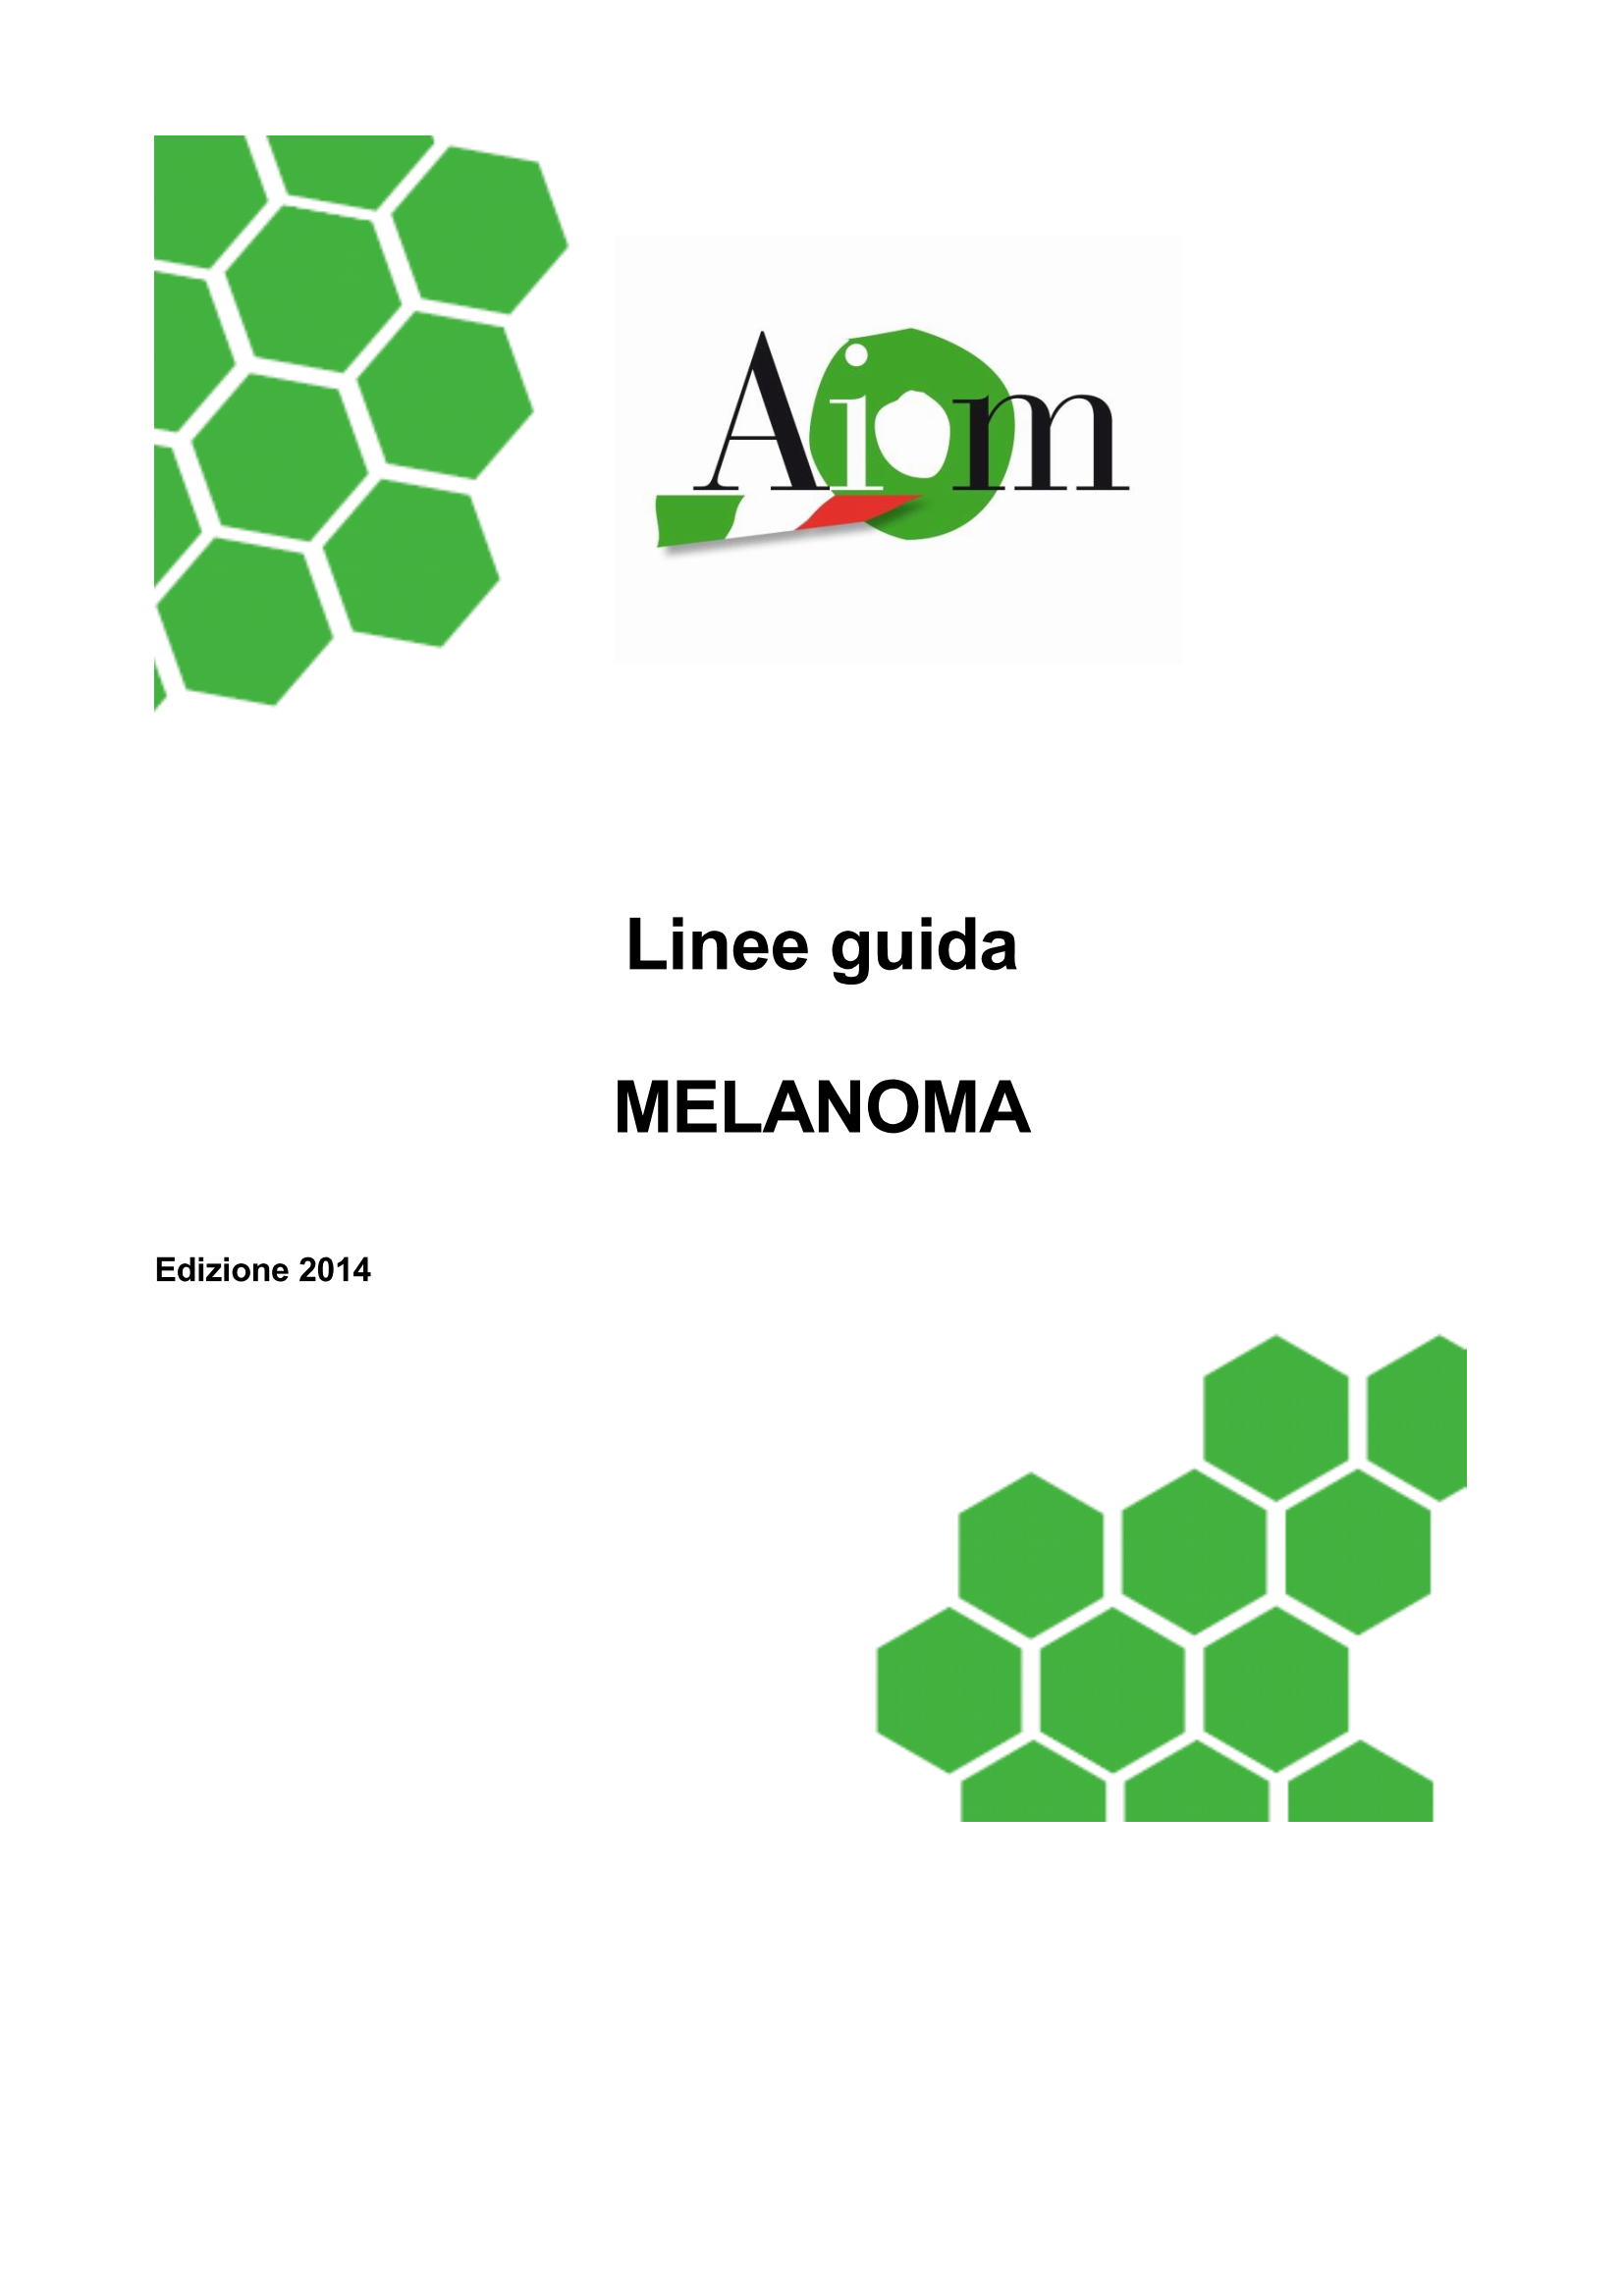 2014 LG AIOM Melanoma Page 1